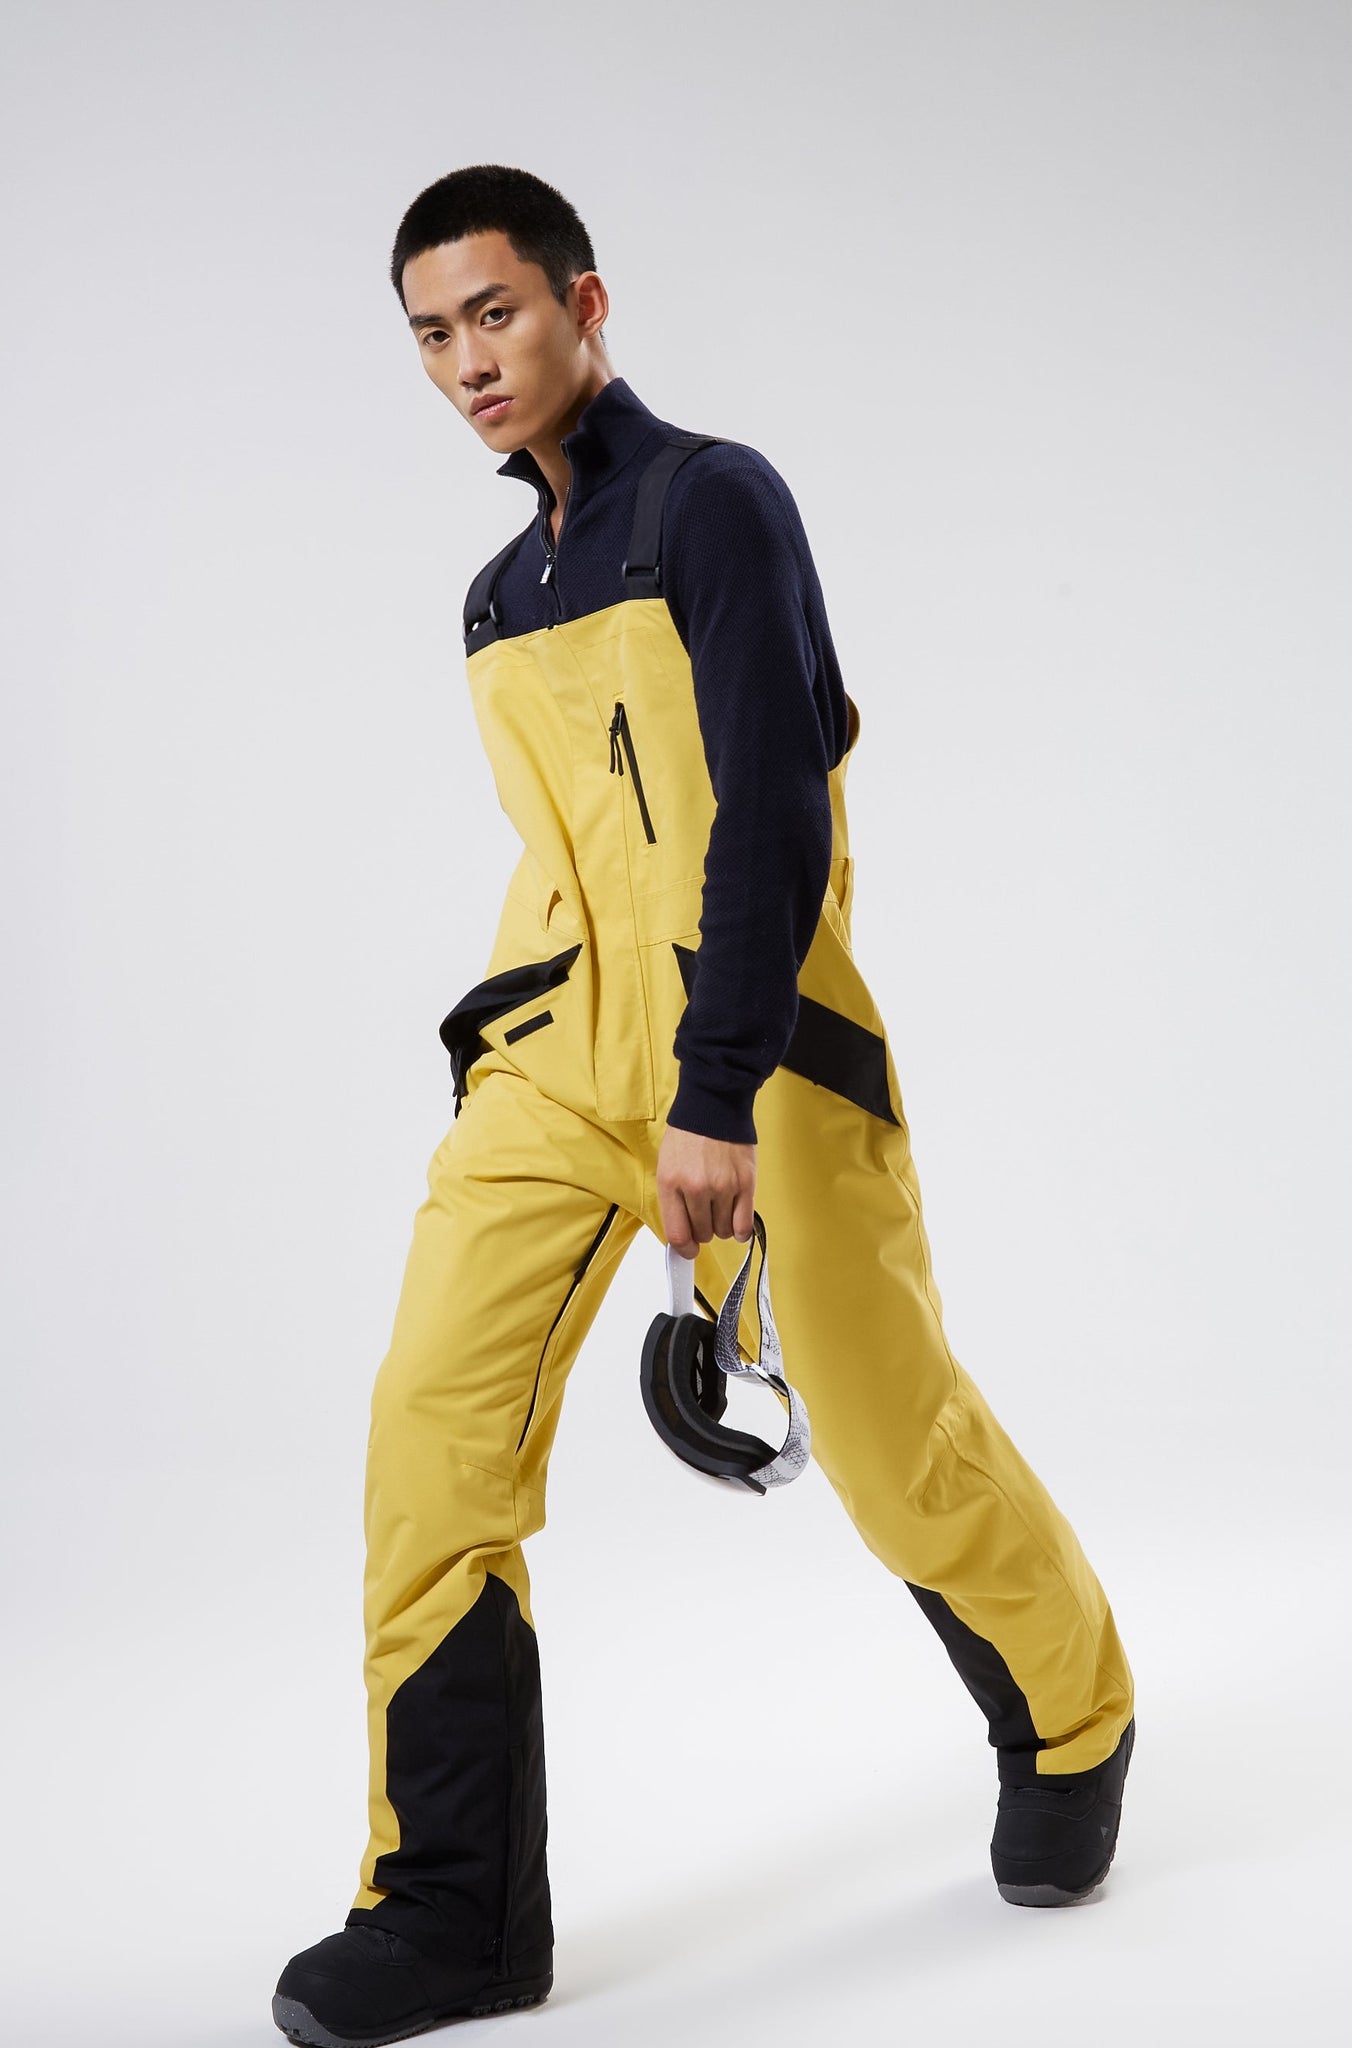 YOLO Yellow Pants